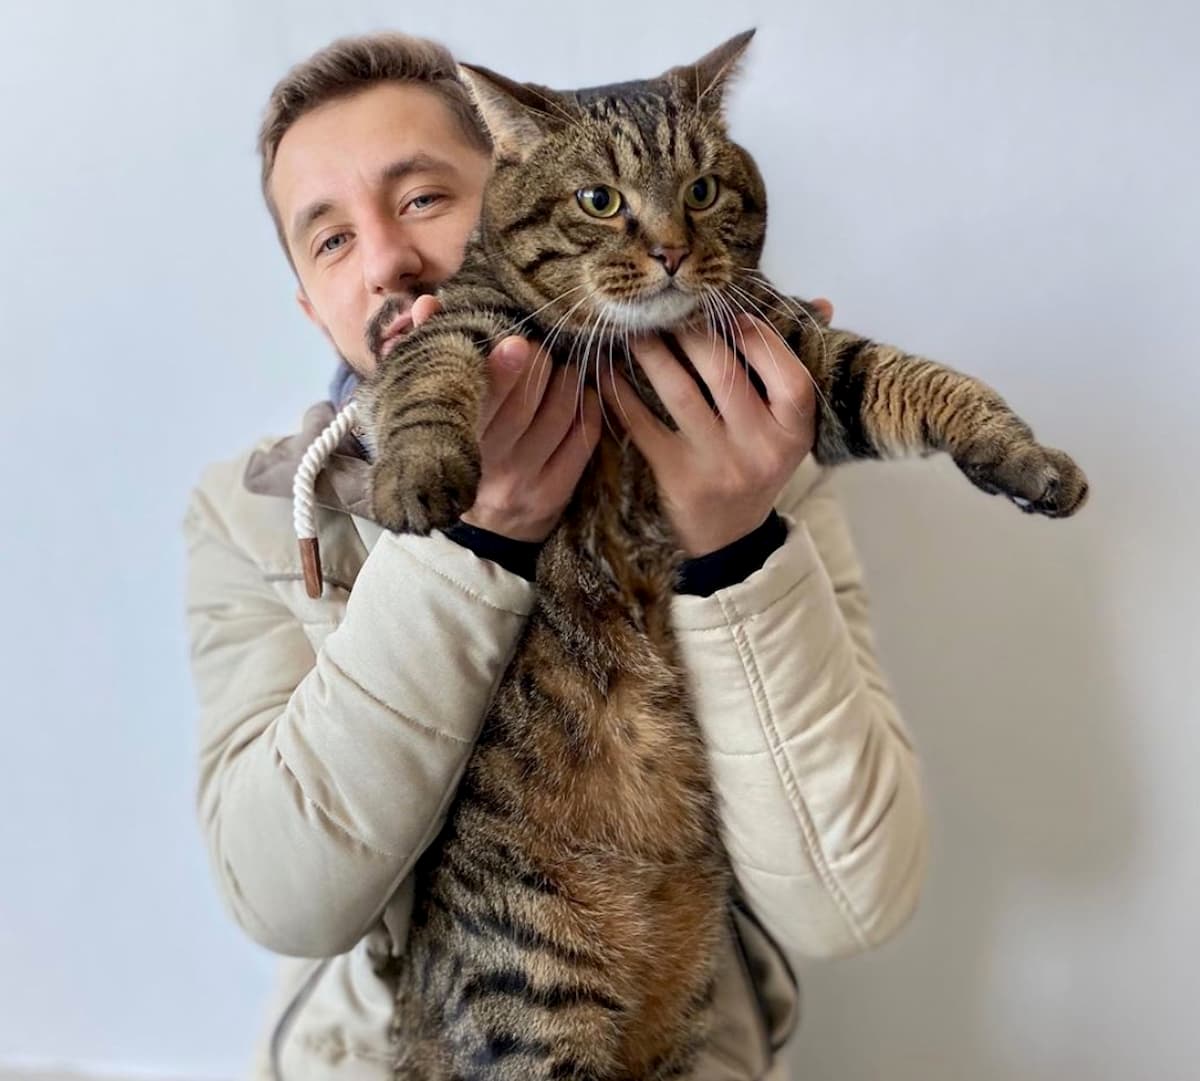 Russia, il gatto Viktor respinto dall'aereo perché grasso. La sua storia diventa un caso mondiale